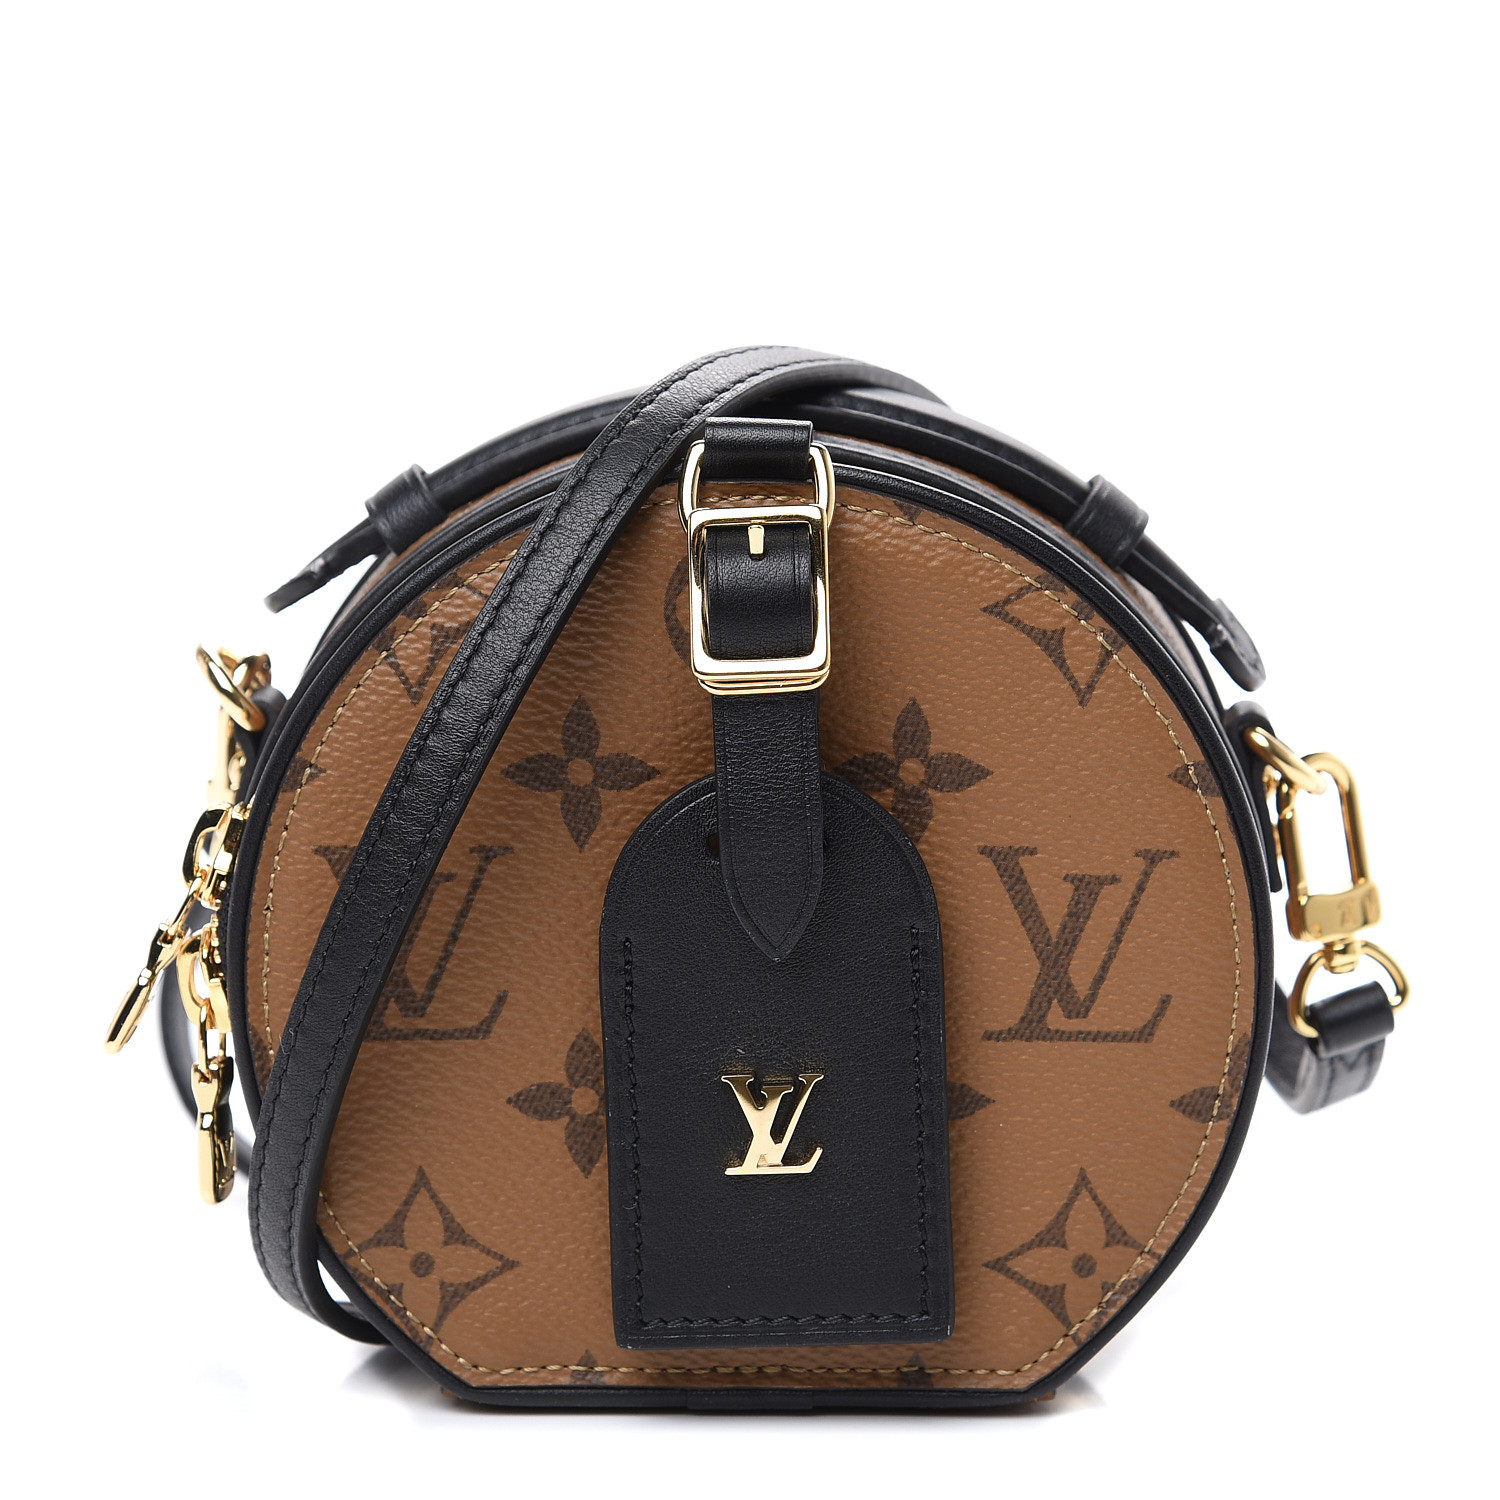 Louis Vuitton Monogram Petite Boite Chapeau Bag - Louis Vuitton Canada